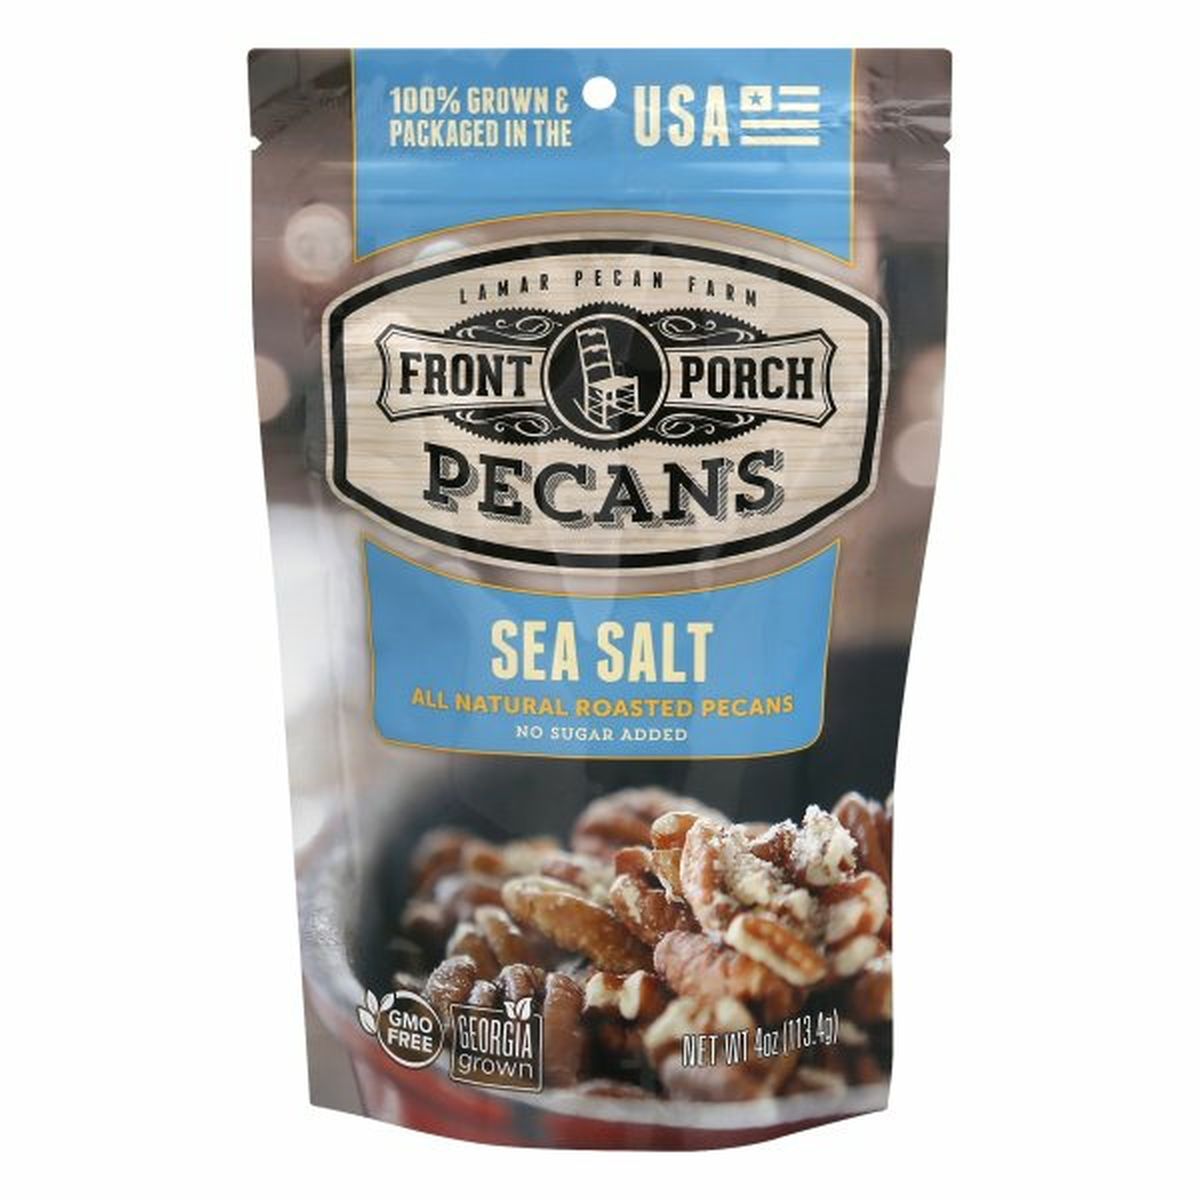 Calories in Front Porch Pecans, Sea Salt